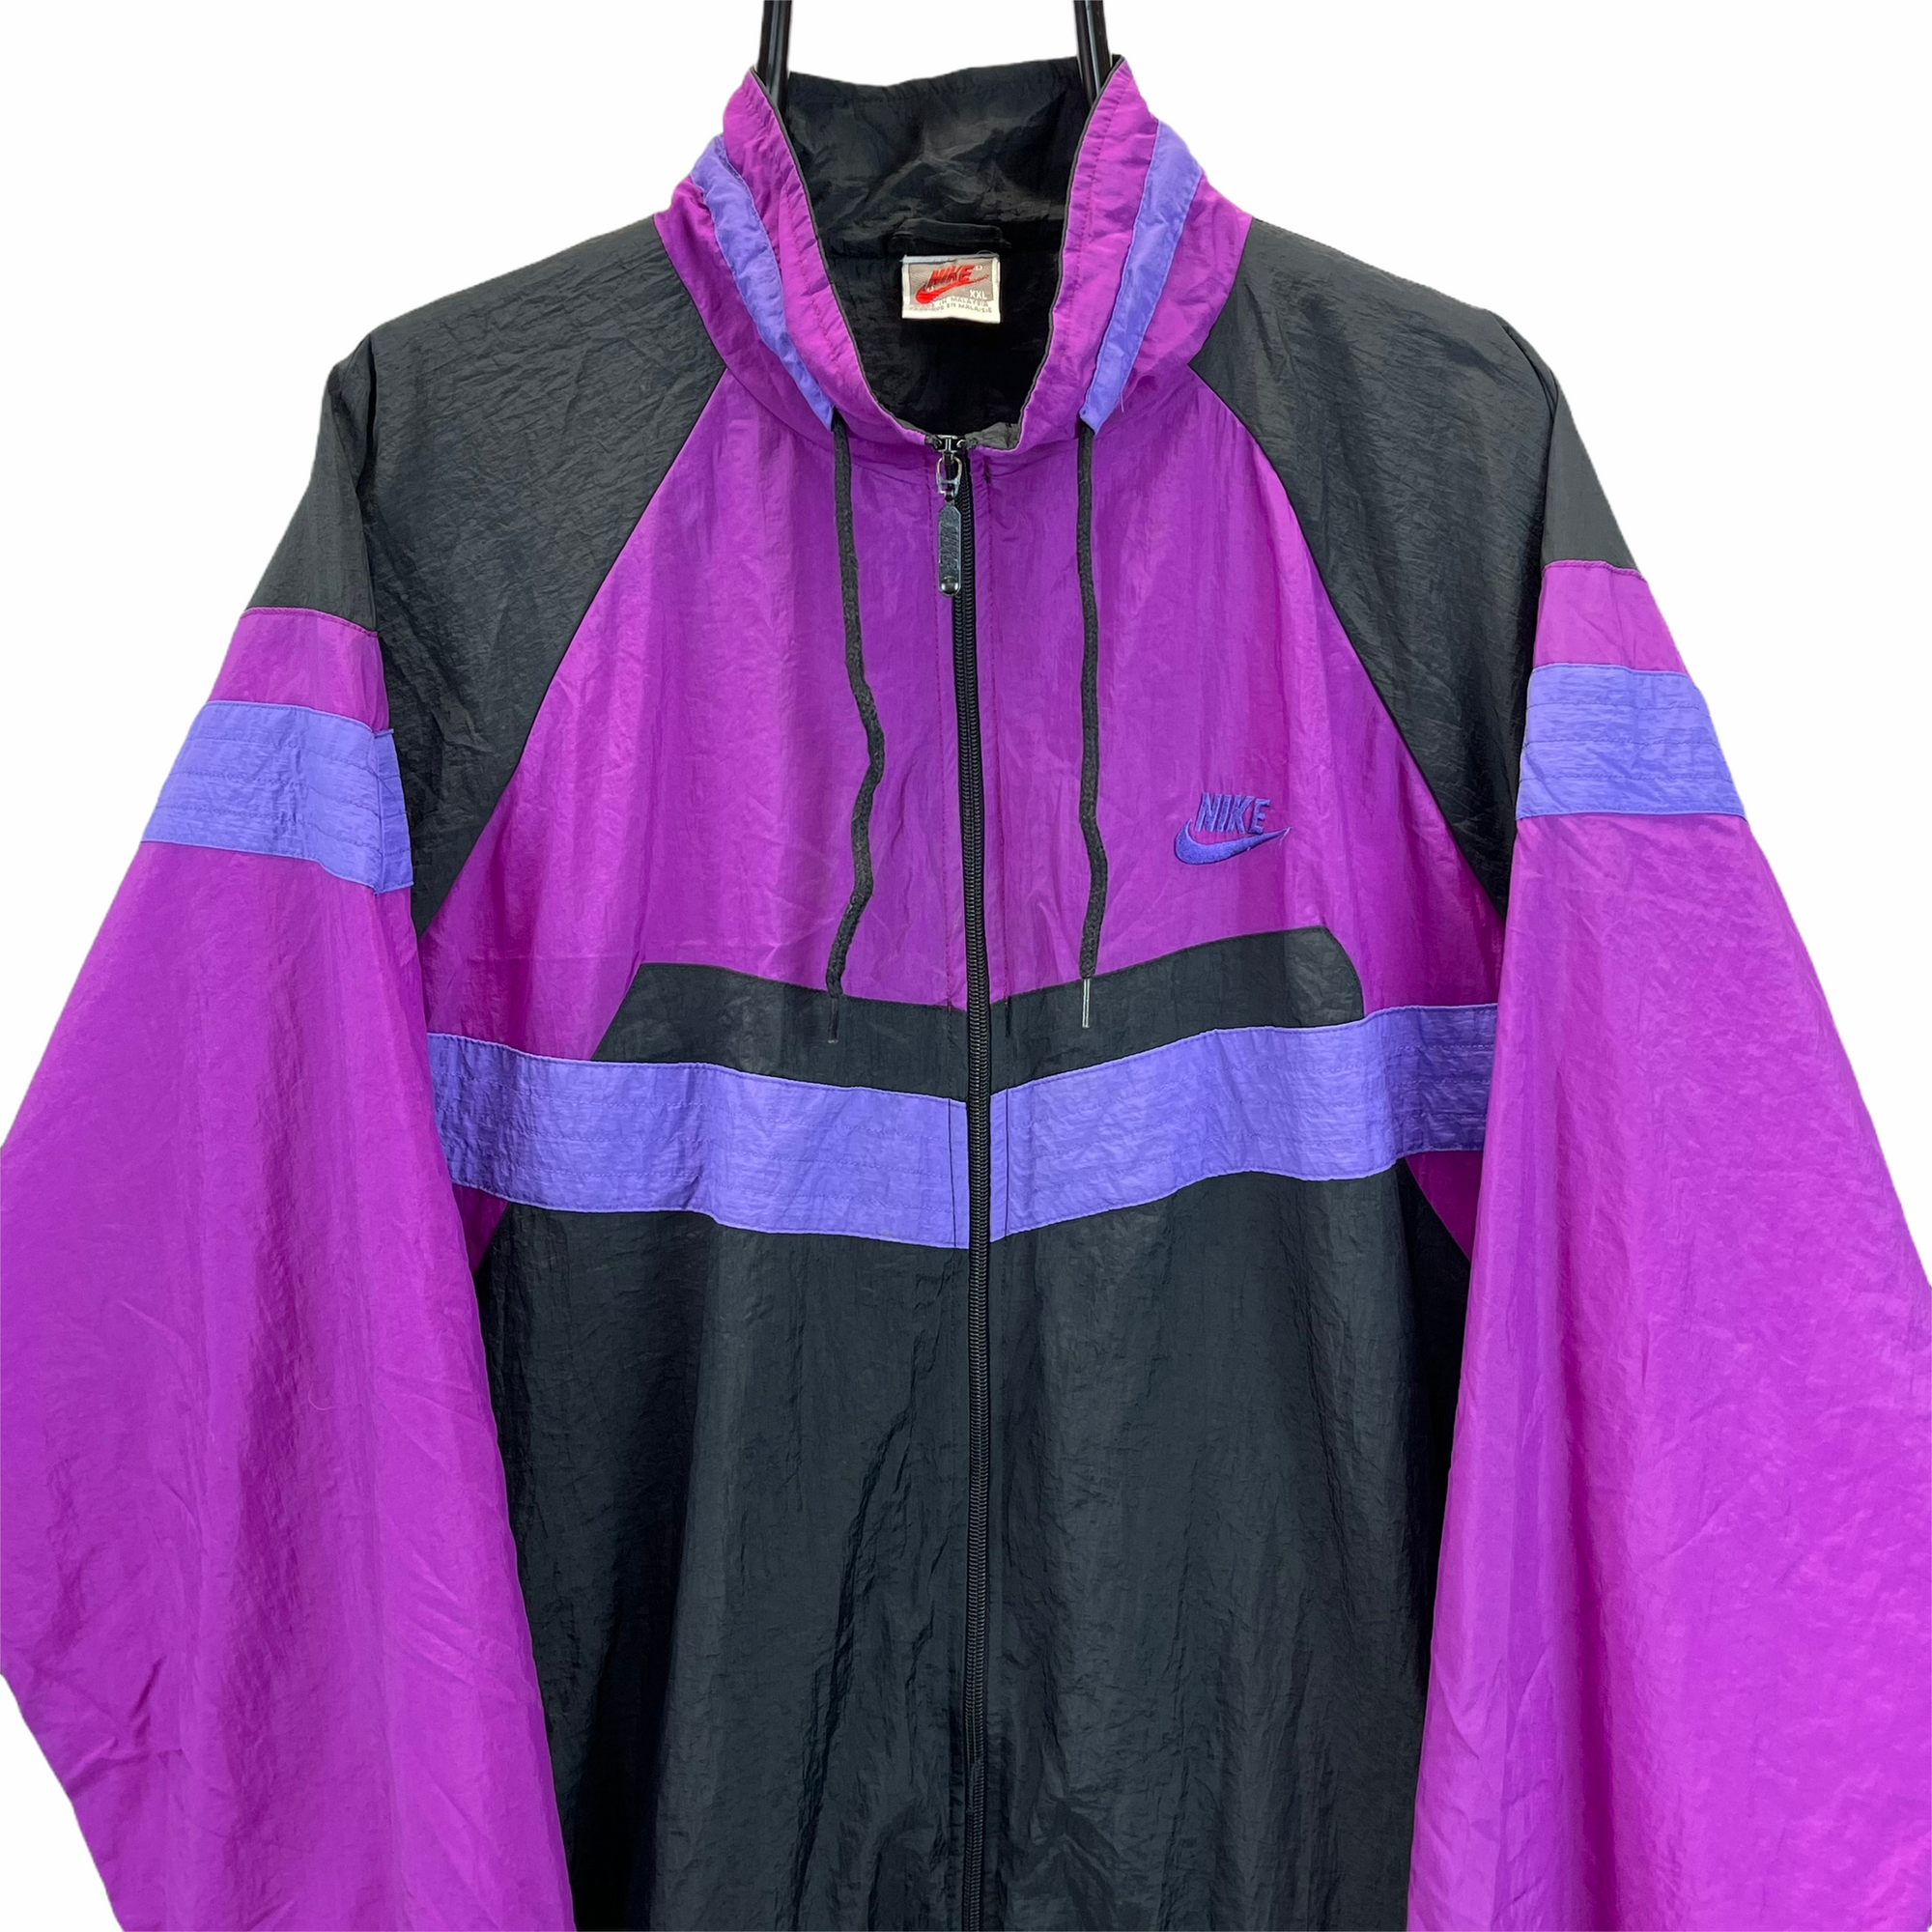 Vintage 80s Nike Track Jacket in Purple & Black - Men's XXL/Women's XXXL